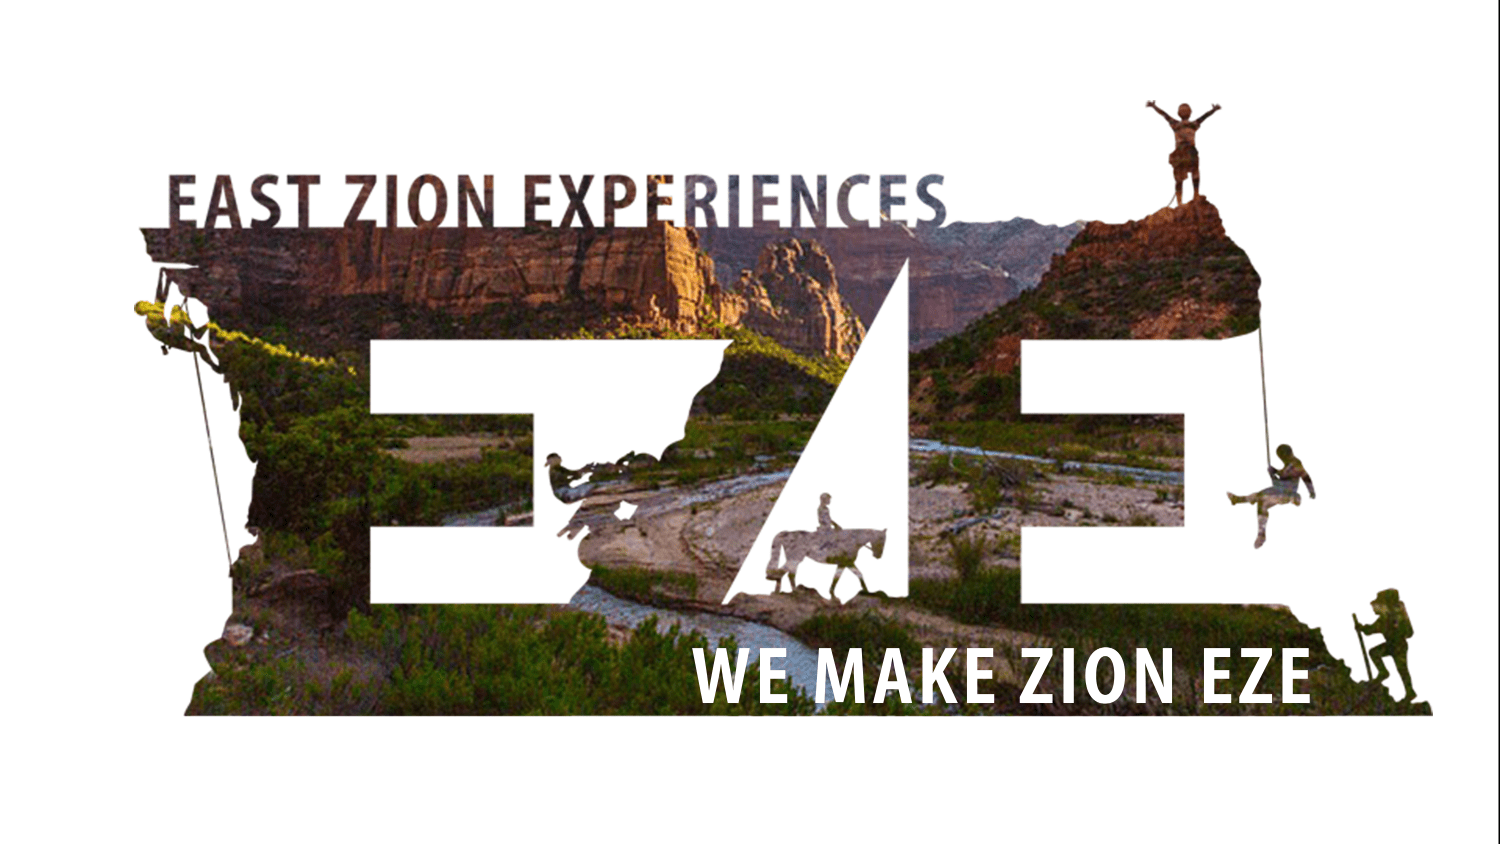 East zion experiences utv slot canyon tour · 275 reviews · 2 hours ; Canyoneering Utah East Zion Experiences